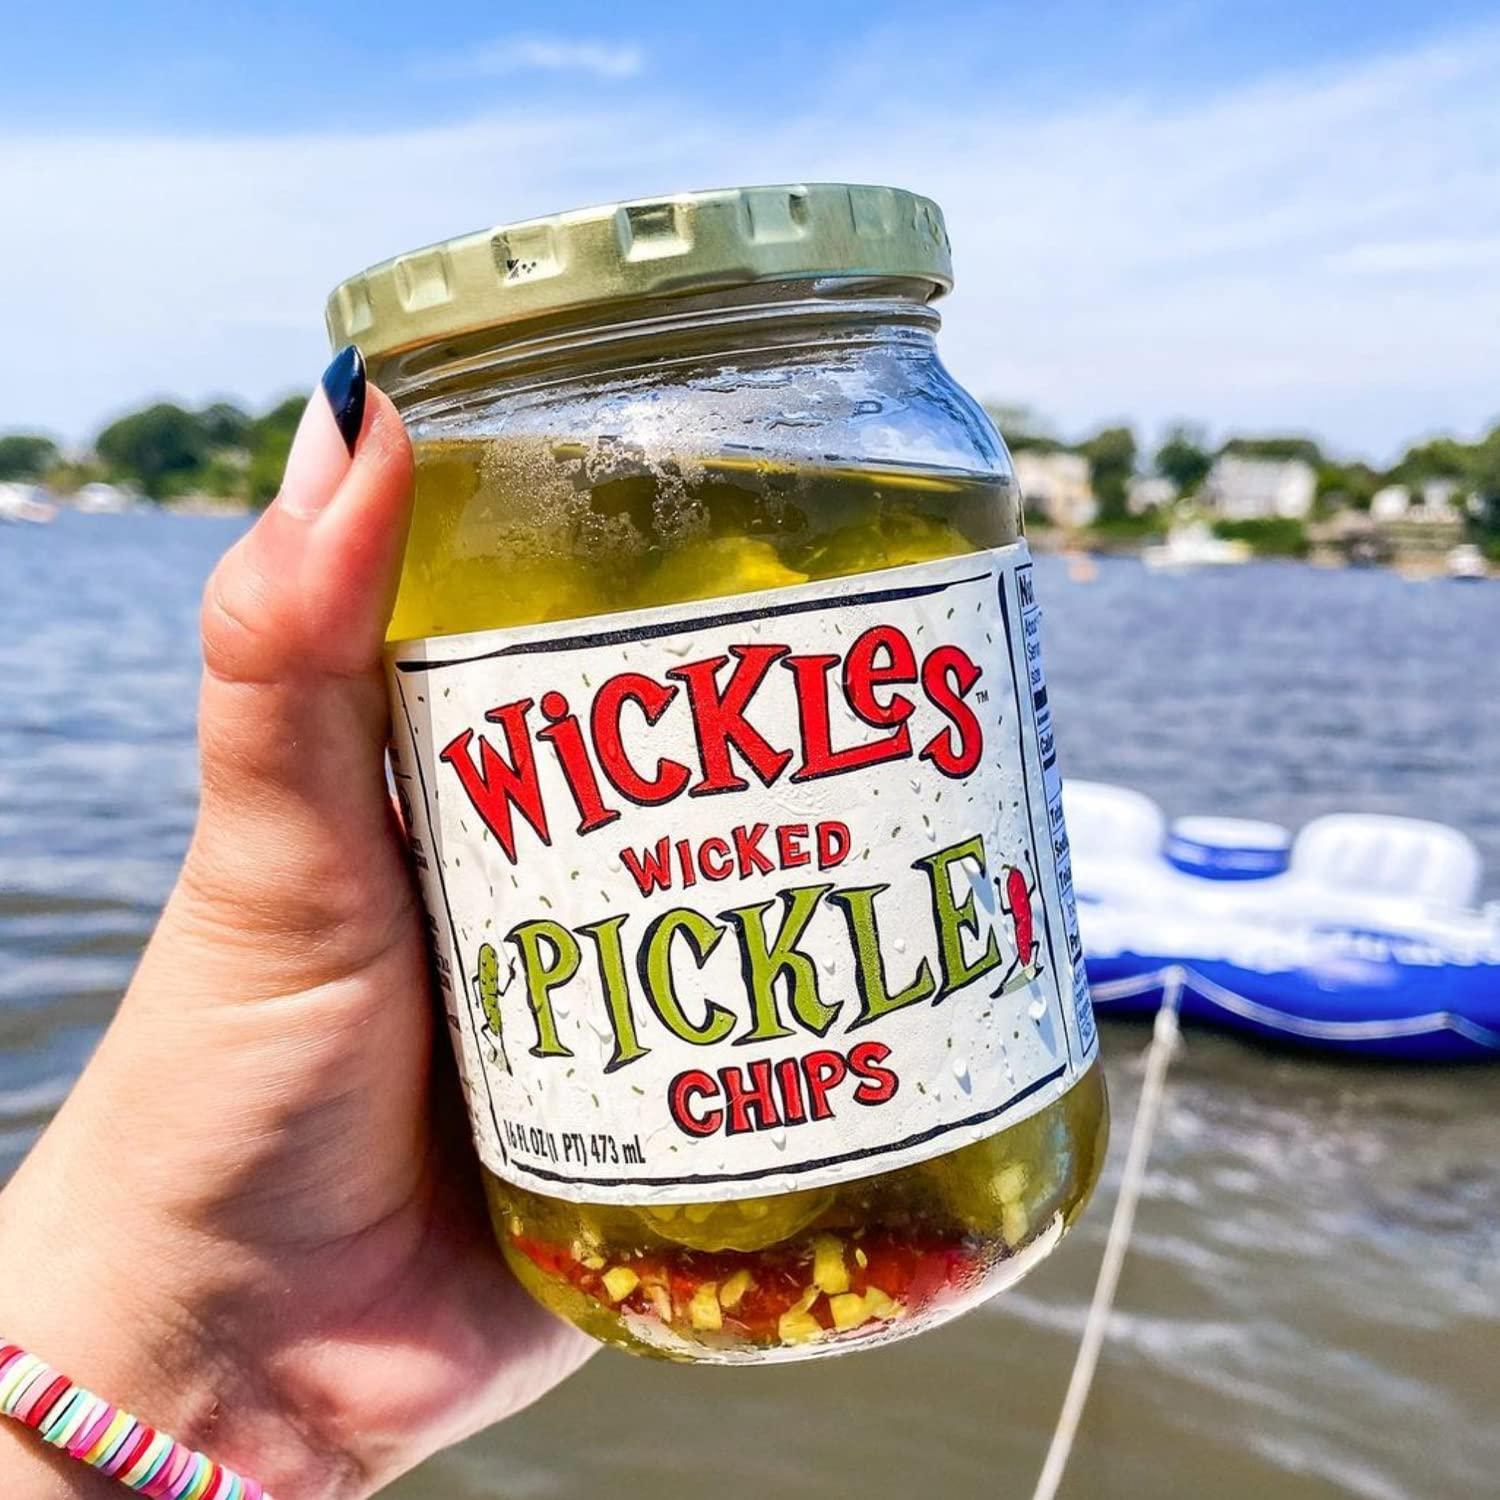 Wickles Pickles Sweet & Spicy Pickle Relish (16 oz jar)